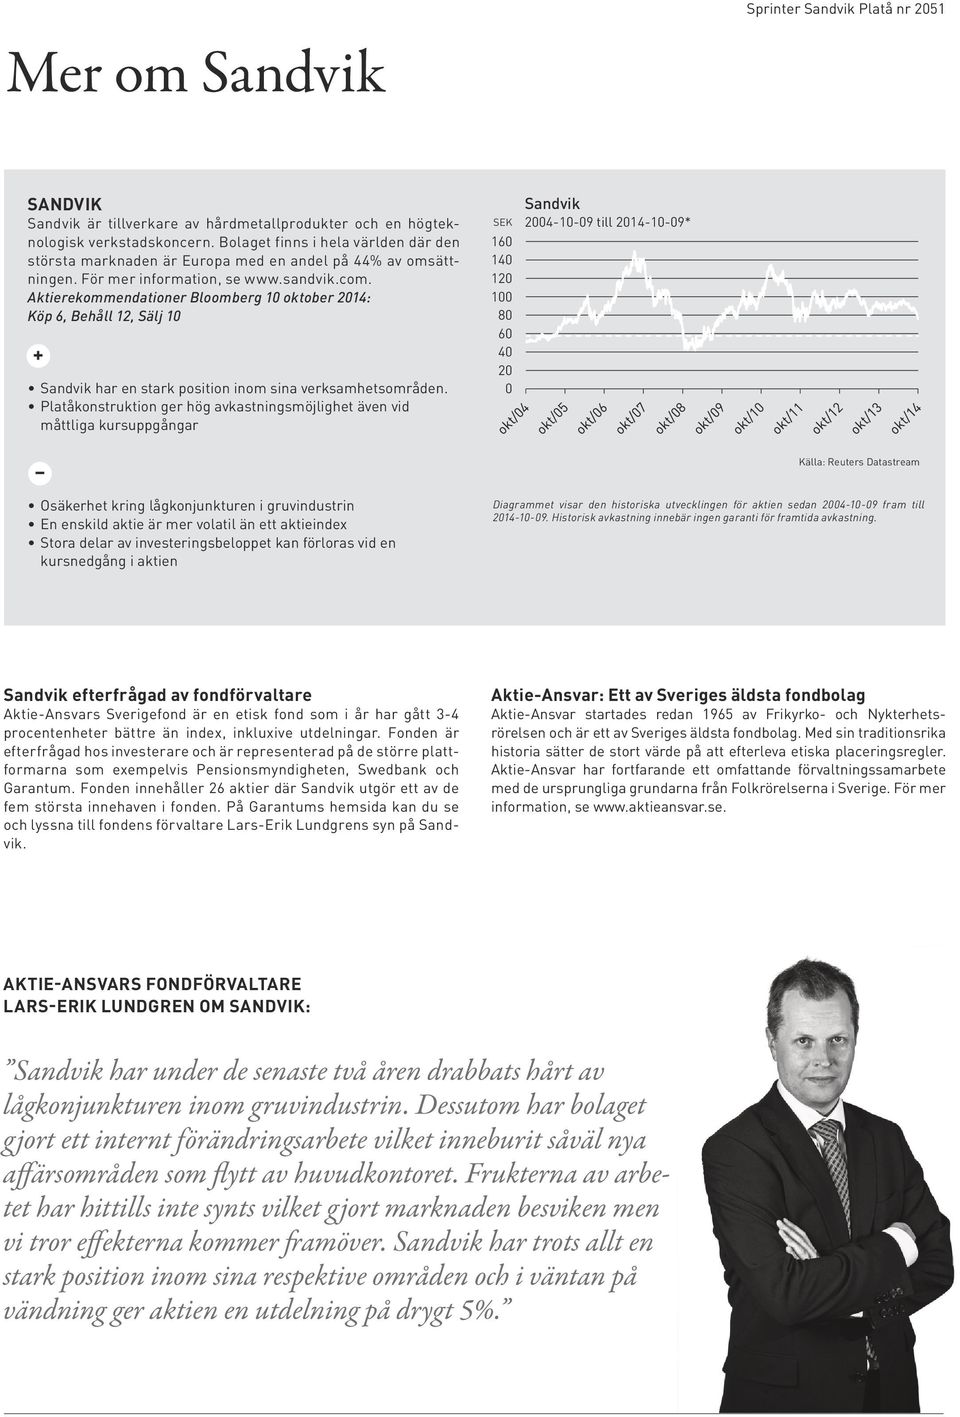 Aktierekommendationer Bloomberg 10 oktober 2014: Köp 6, Behåll 12, Sälj 10 + Sandvik har en stark position inom sina verksamhetsområden.